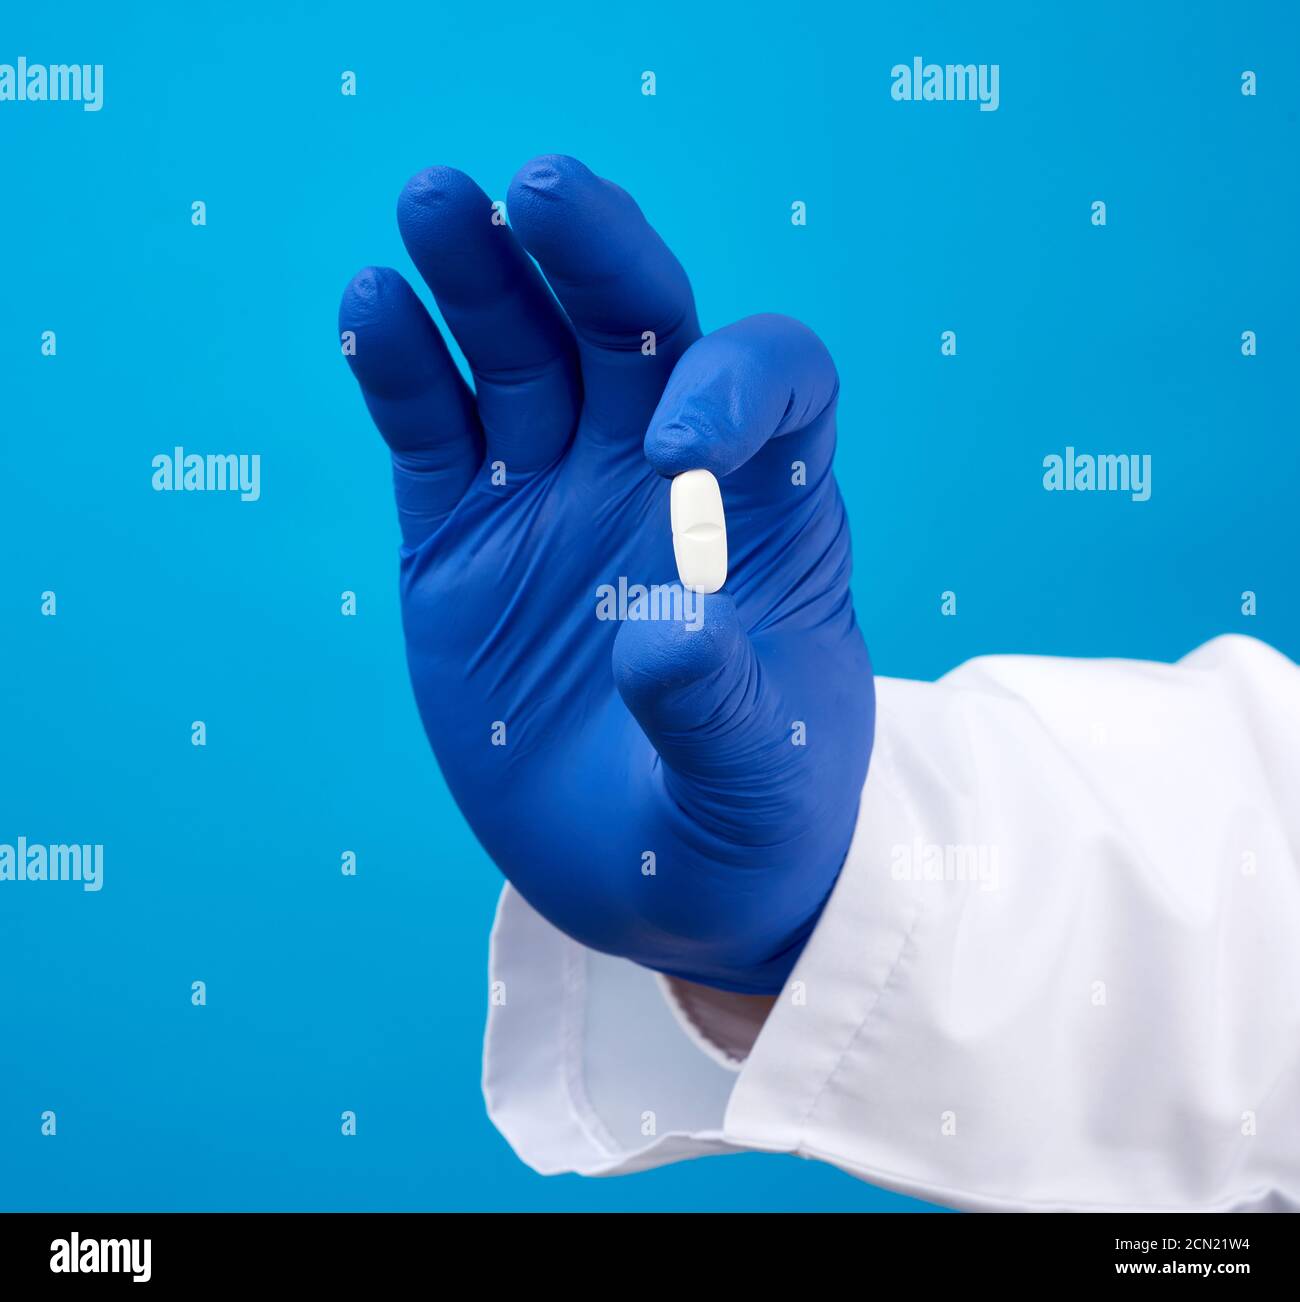 la mano maschile in guanti sterili blu contiene una pillola ovale bianca,  concetto di trattamento medico per le malattie Foto stock - Alamy